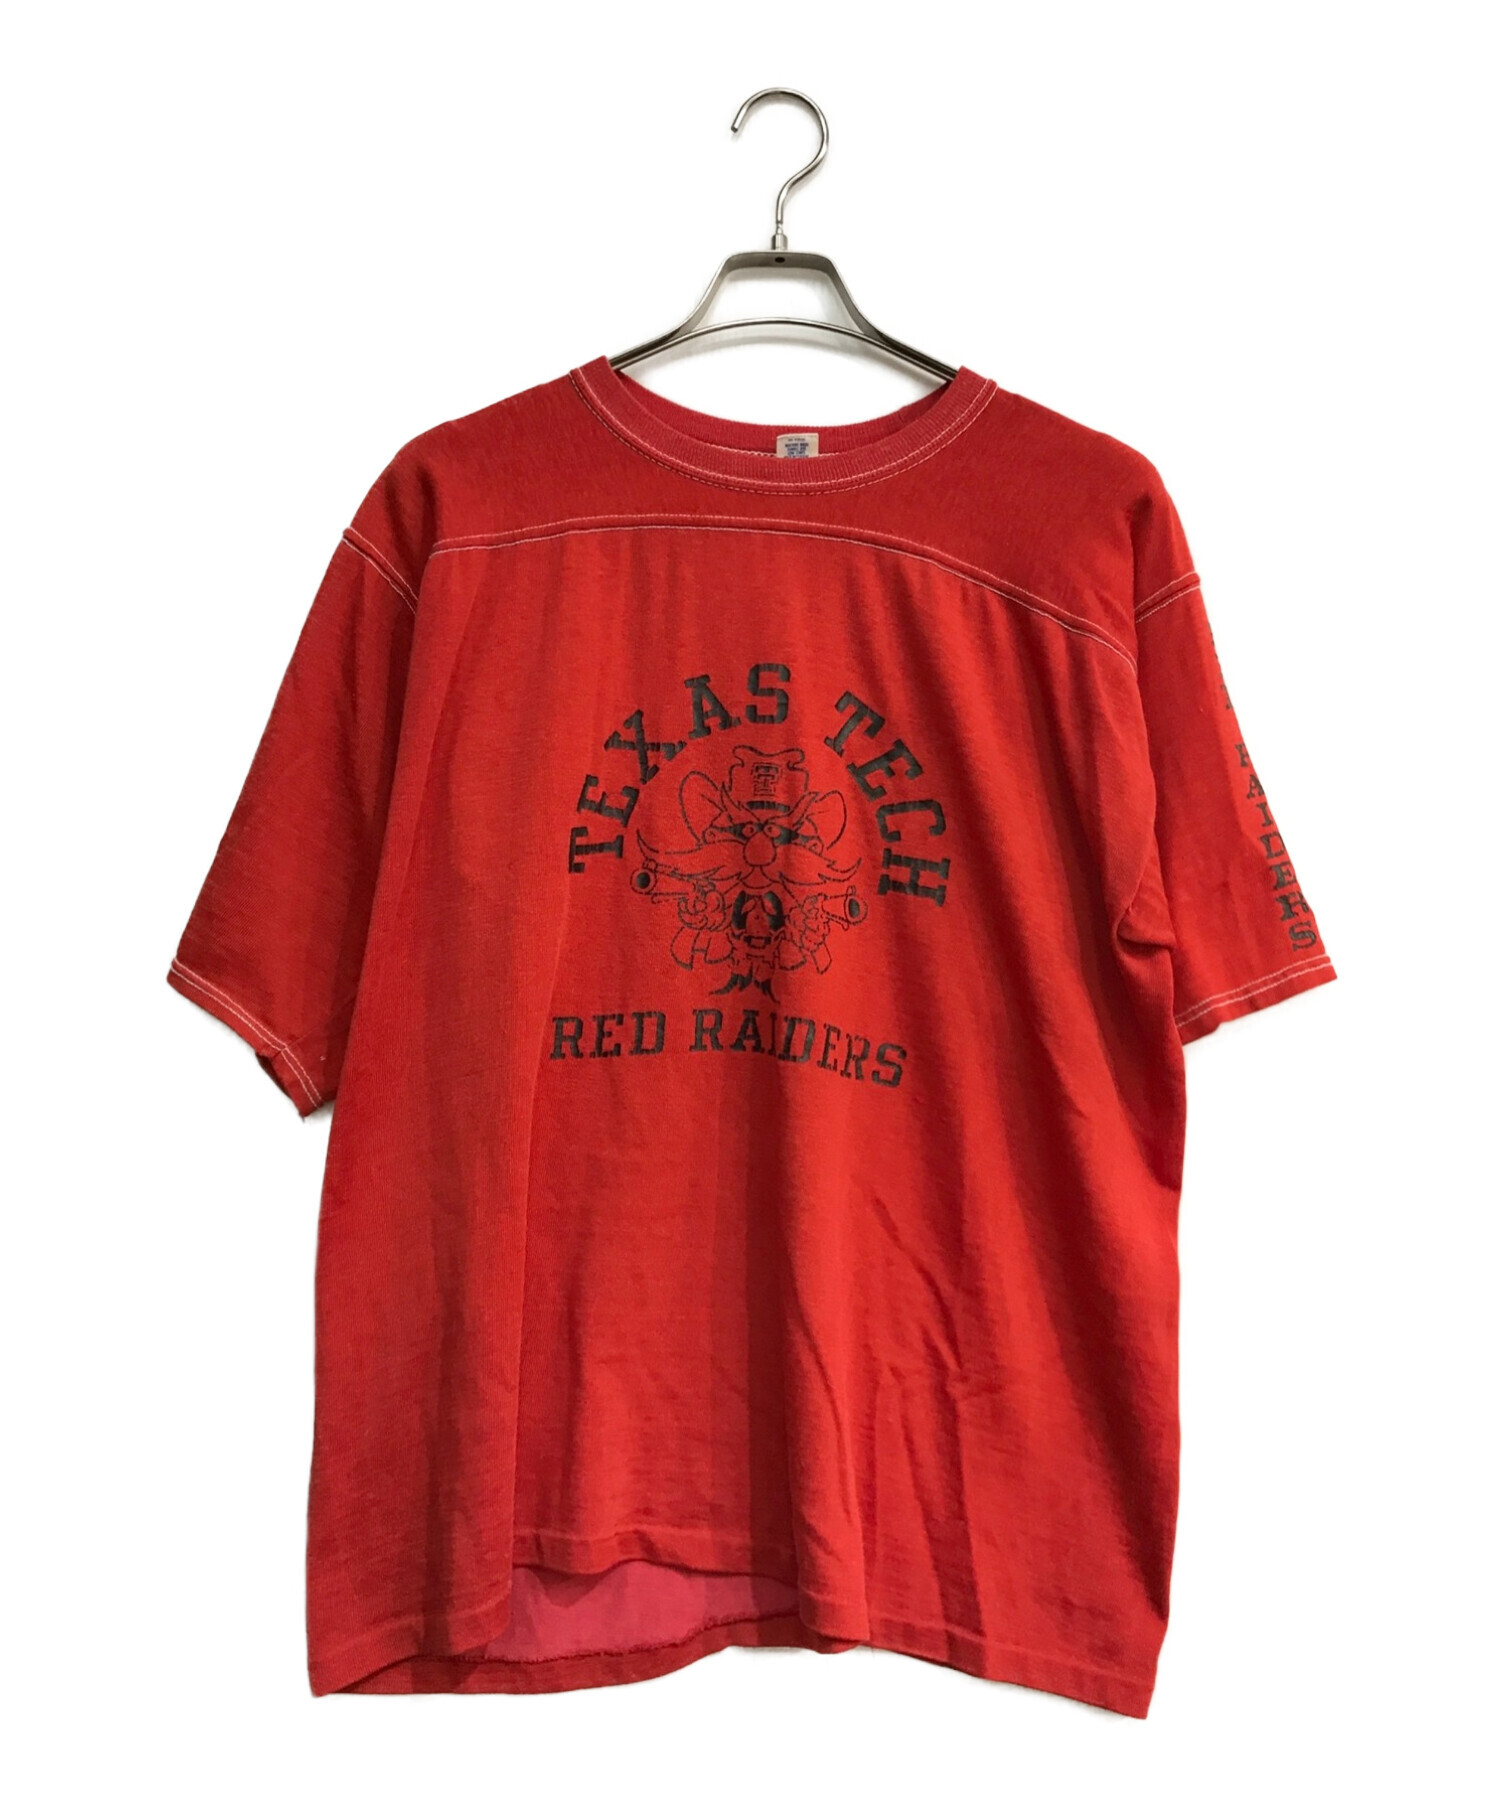 ArteX (アルテックス) RED RAIDERS プリントTシャツ USA製 70~80`s レッド レッド サイズ:XL